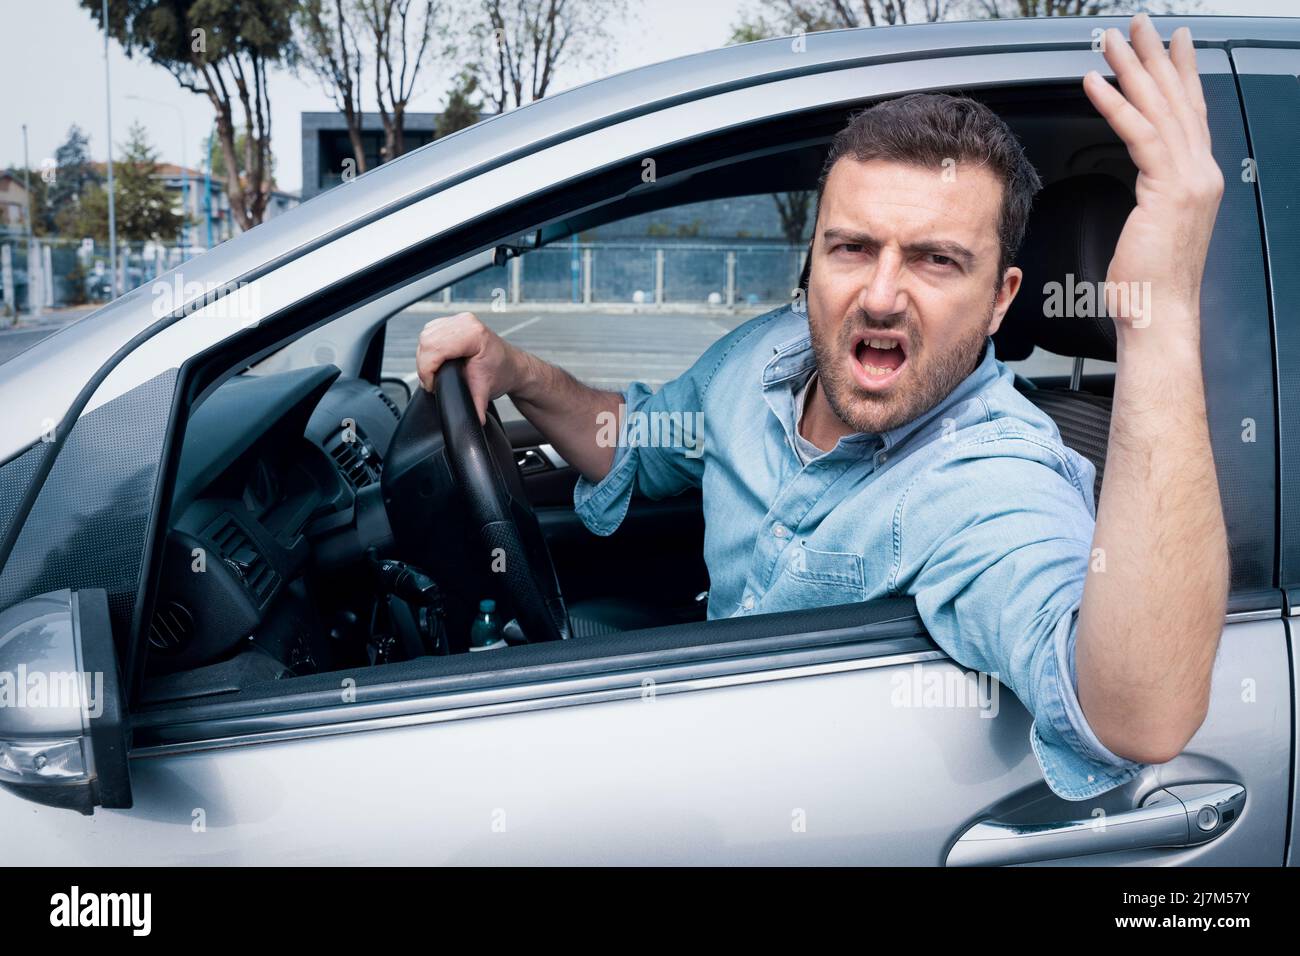 Hombre de la rabia de la carretera en el volante amenazando a otros conductores Foto de stock